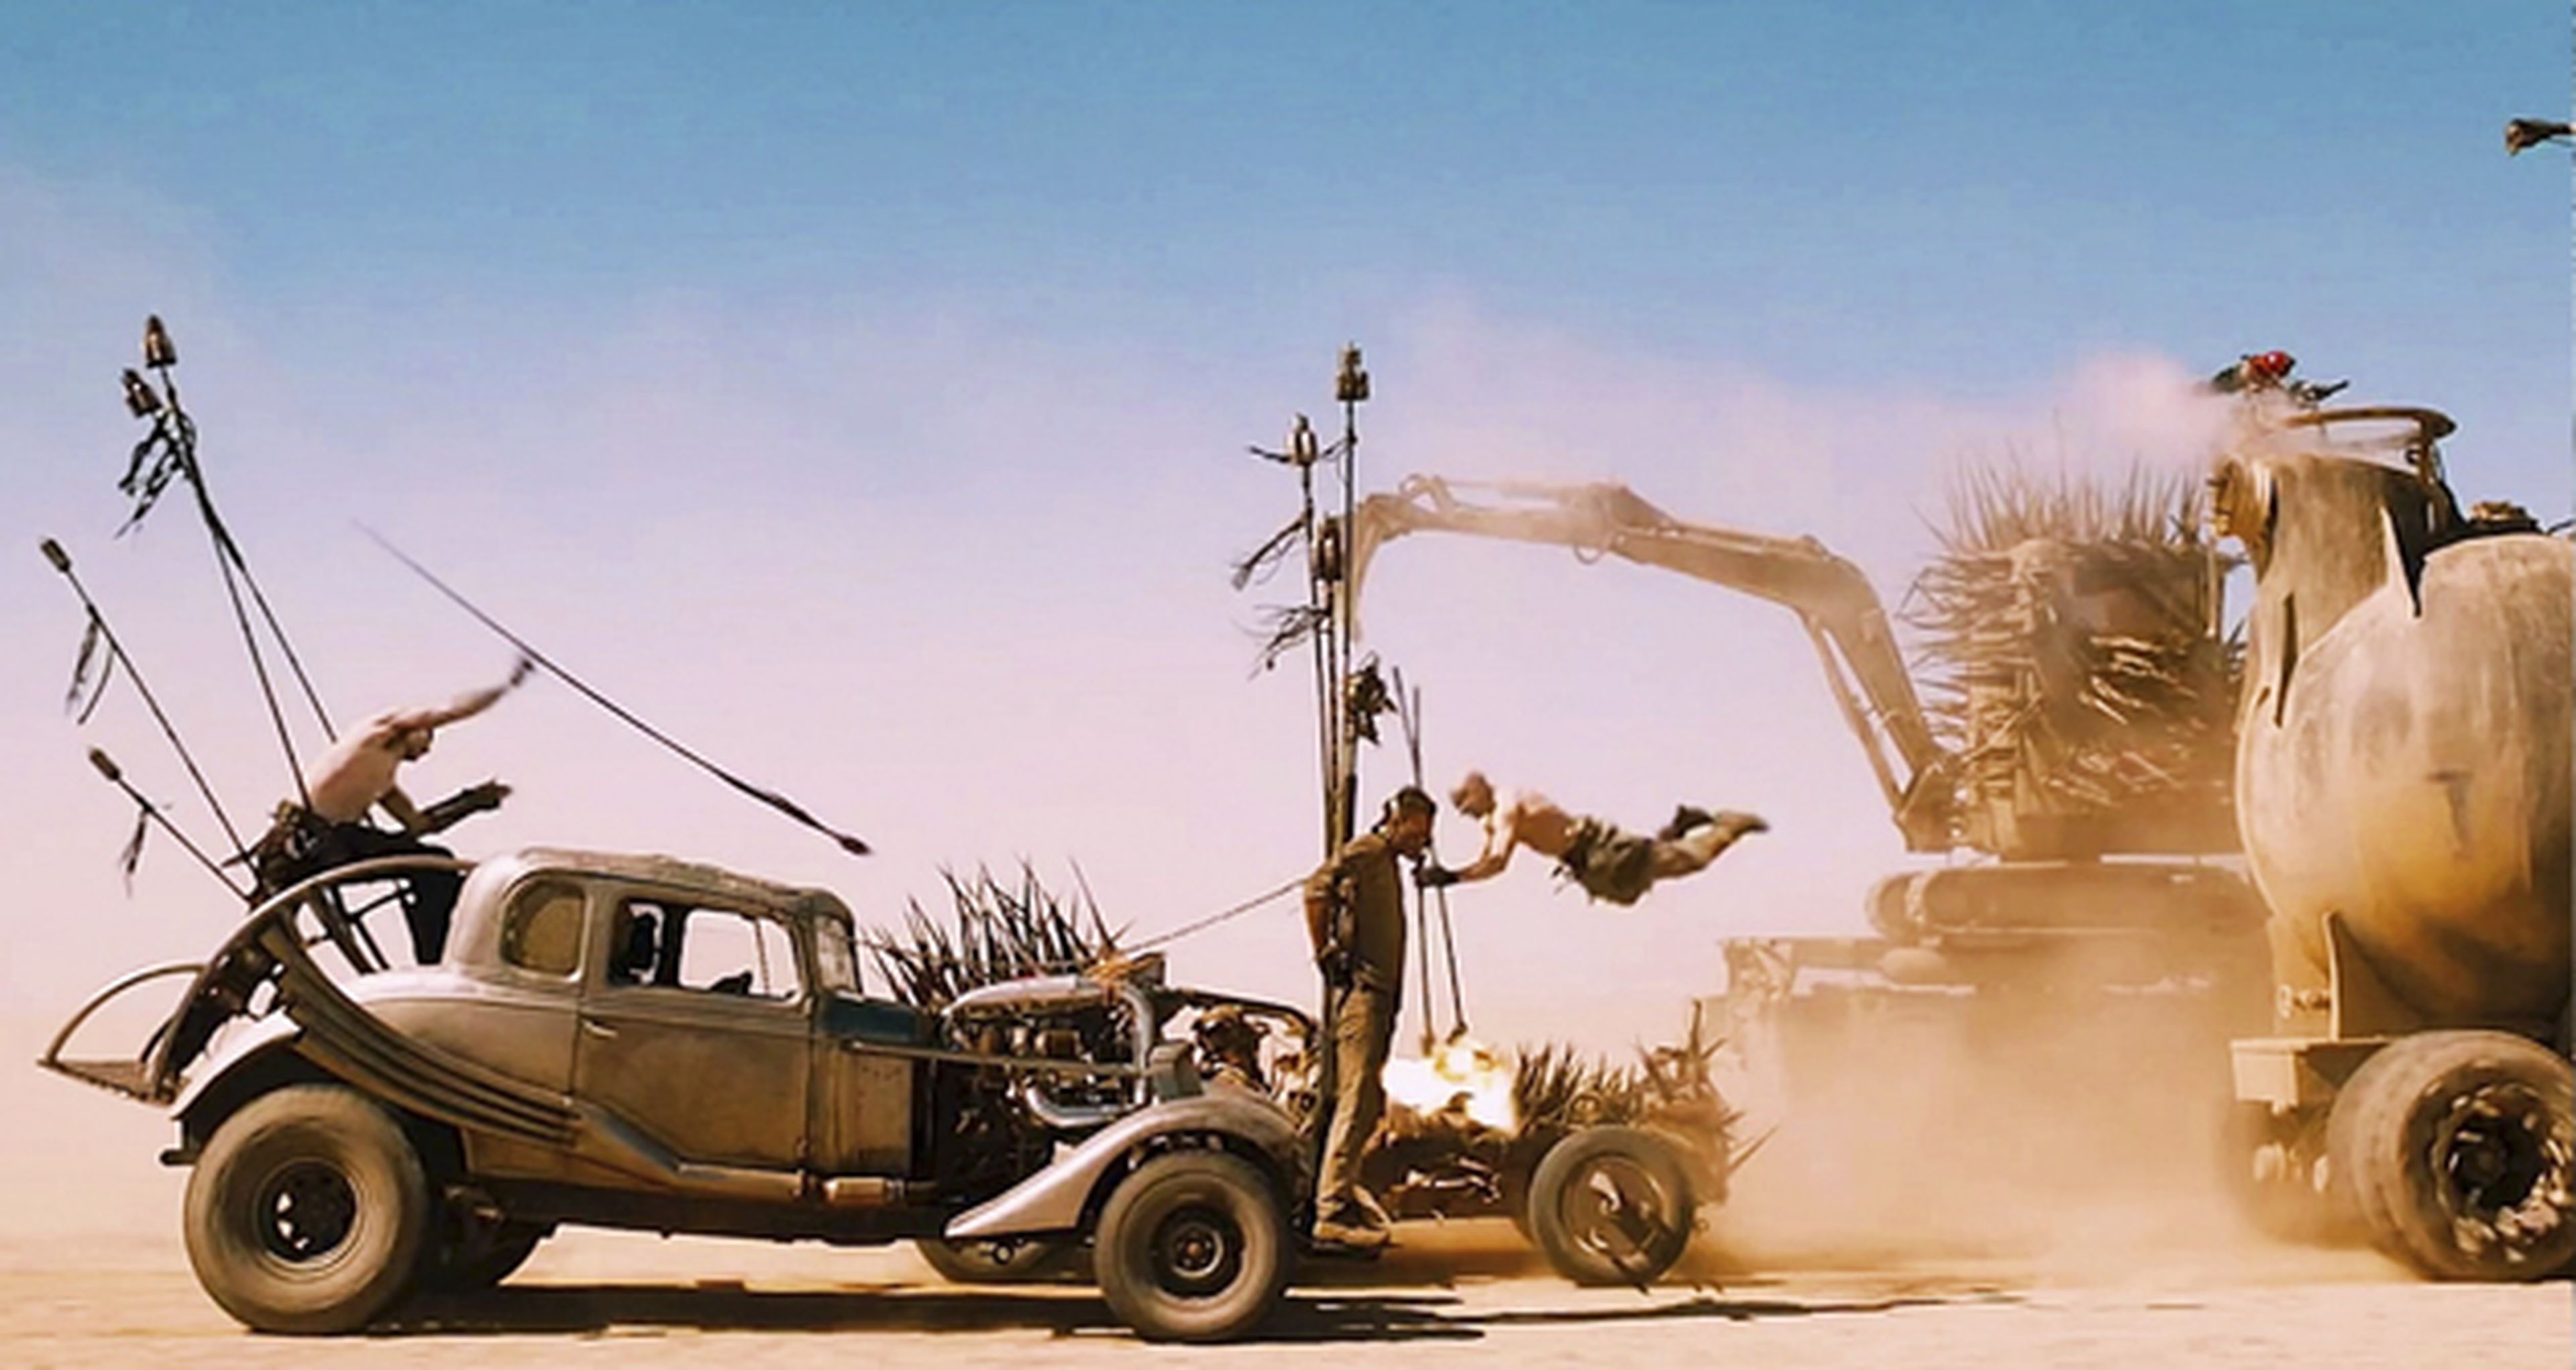 Mad Max: furia en la carretera: tráiler internacional con secuencias inéditas